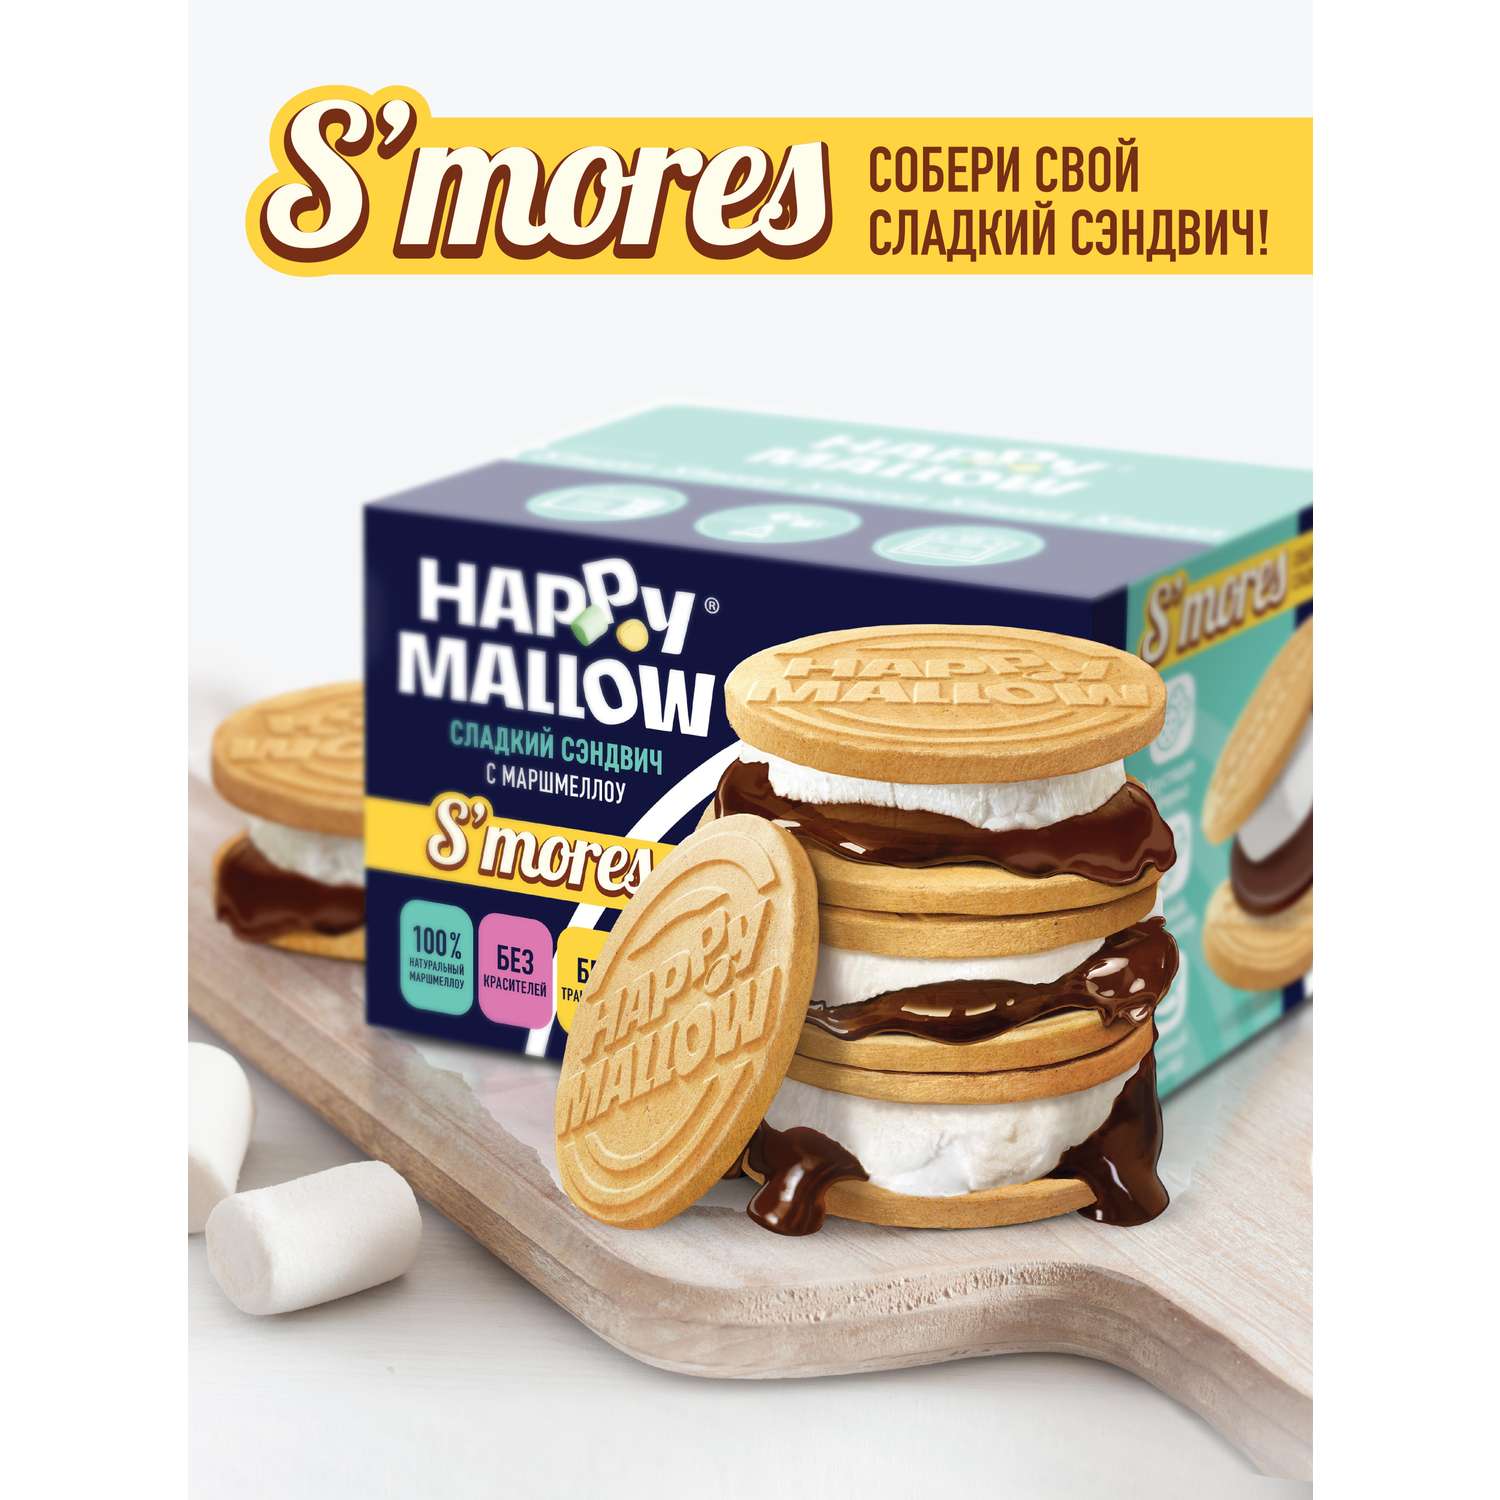 Набор для горячего сэндвича Сладкая сказка Happy Mallow S’mores 180г - фото 1